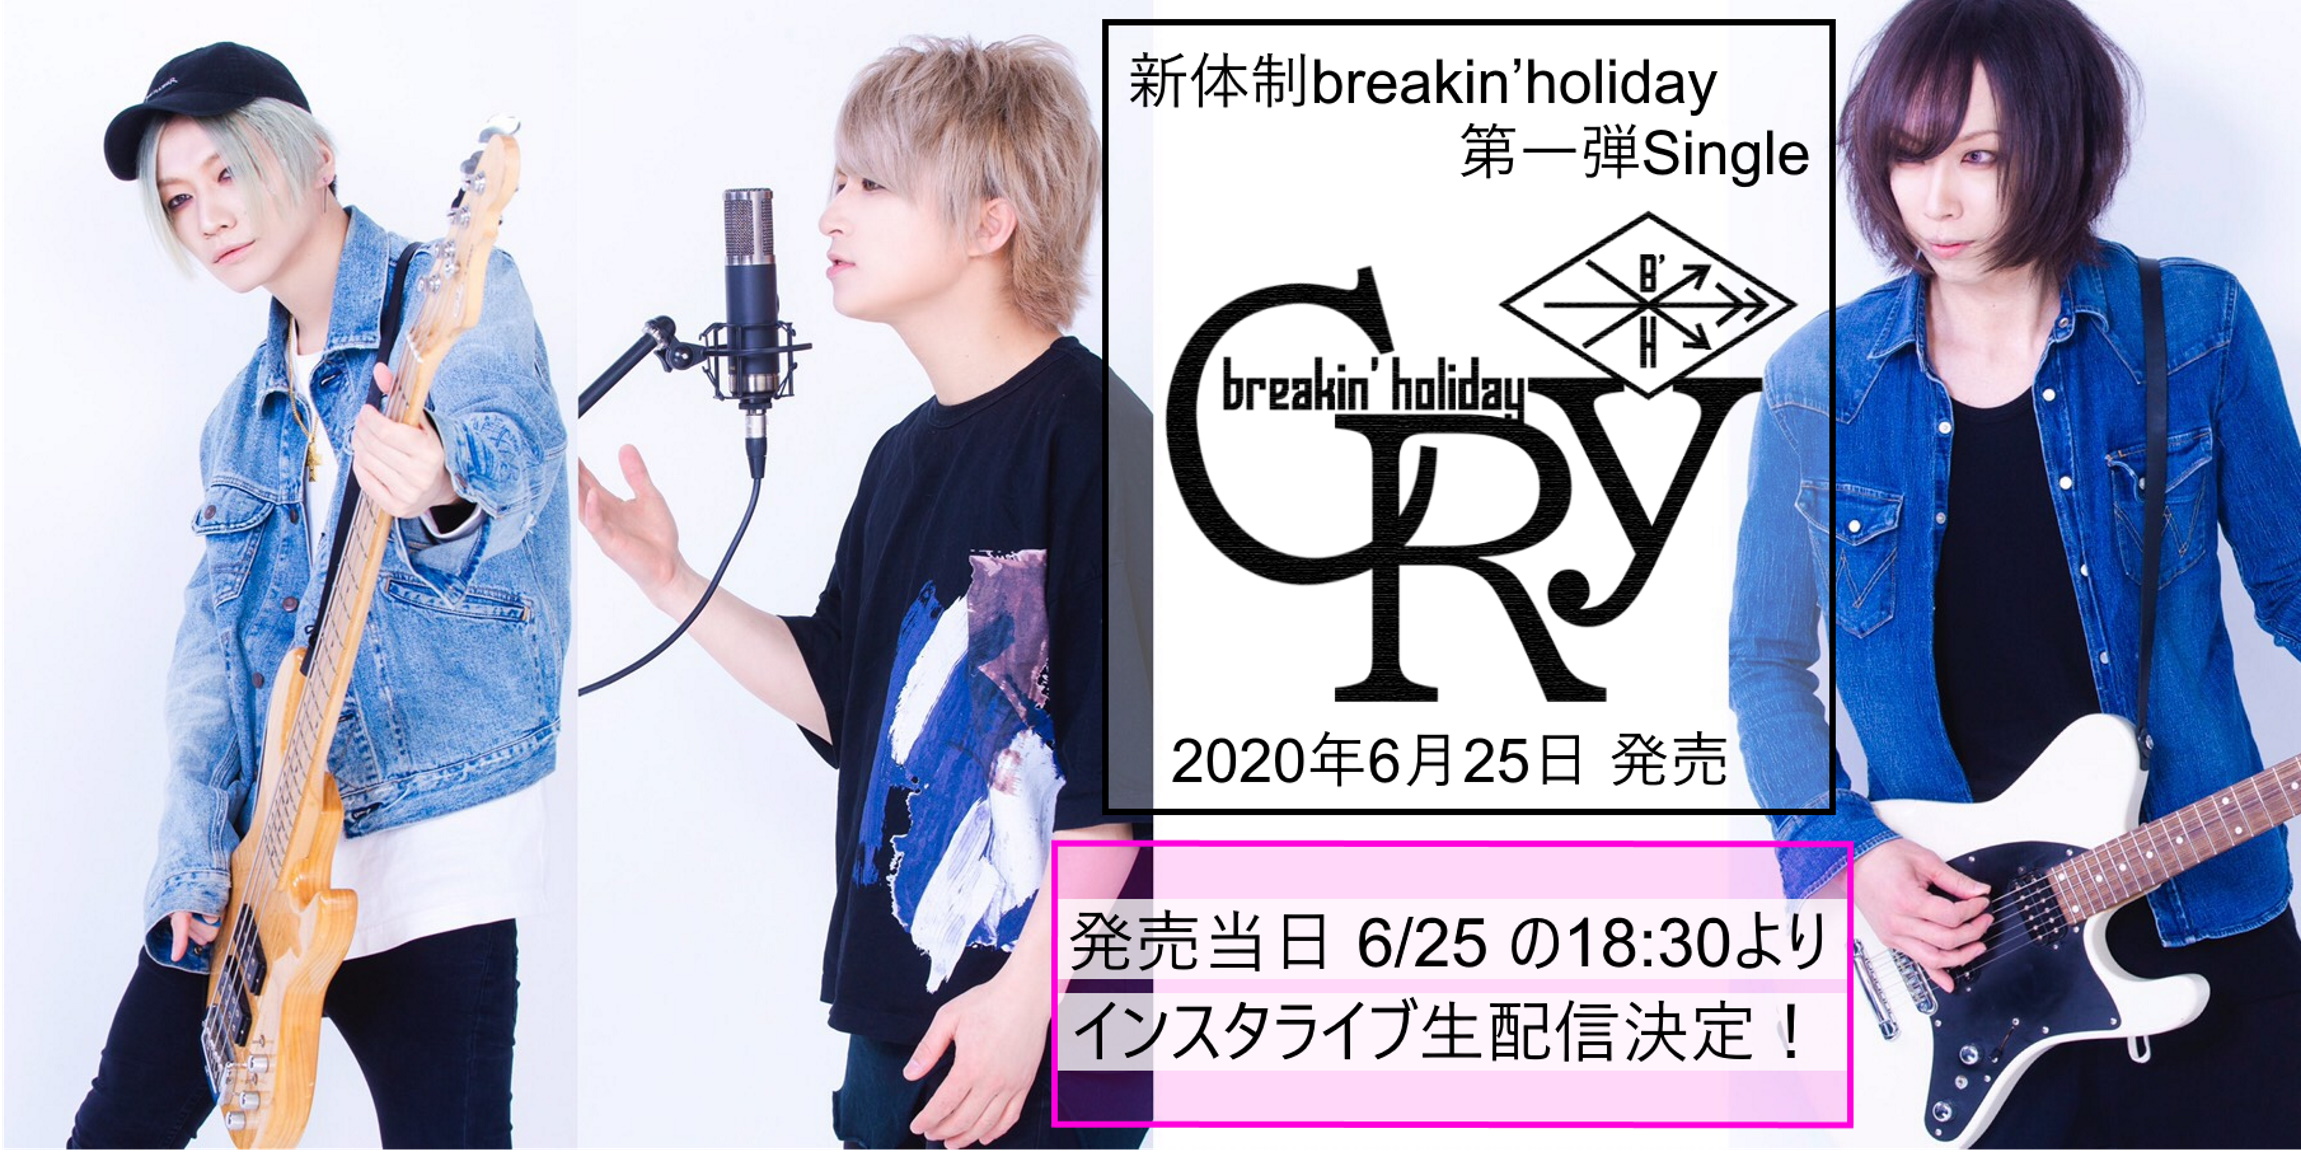 【NEWS】新体制breakin’holiday、3ヶ月連続リリース決定！更にプチクラウドファンディング、ライブ・アウトストアイベントの開催を発表。